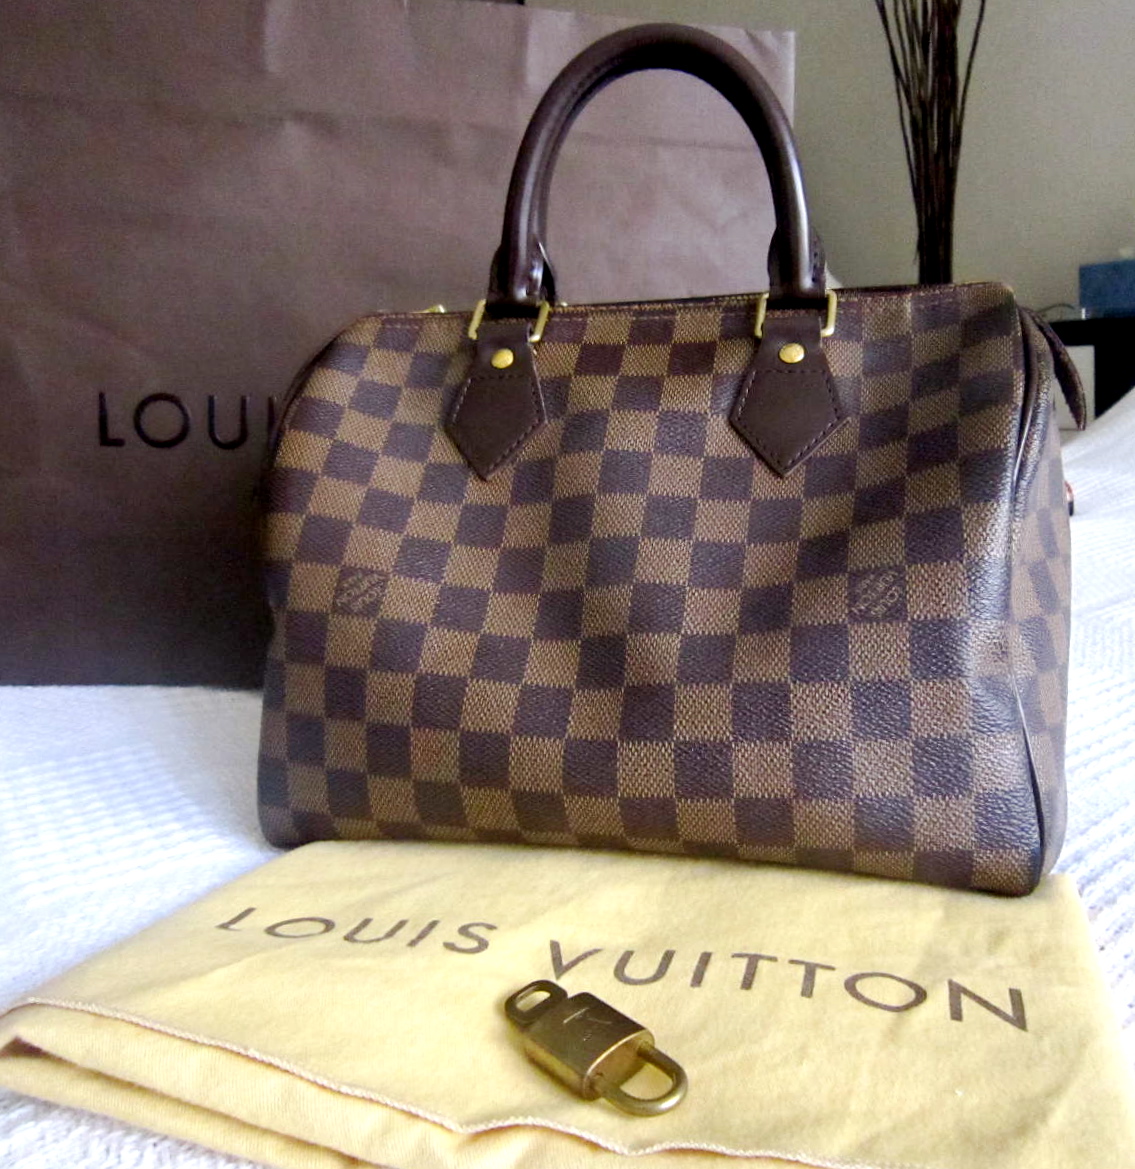 Louis Vuitton Speedy 25 Damier - Clothes Mentor Burnsville